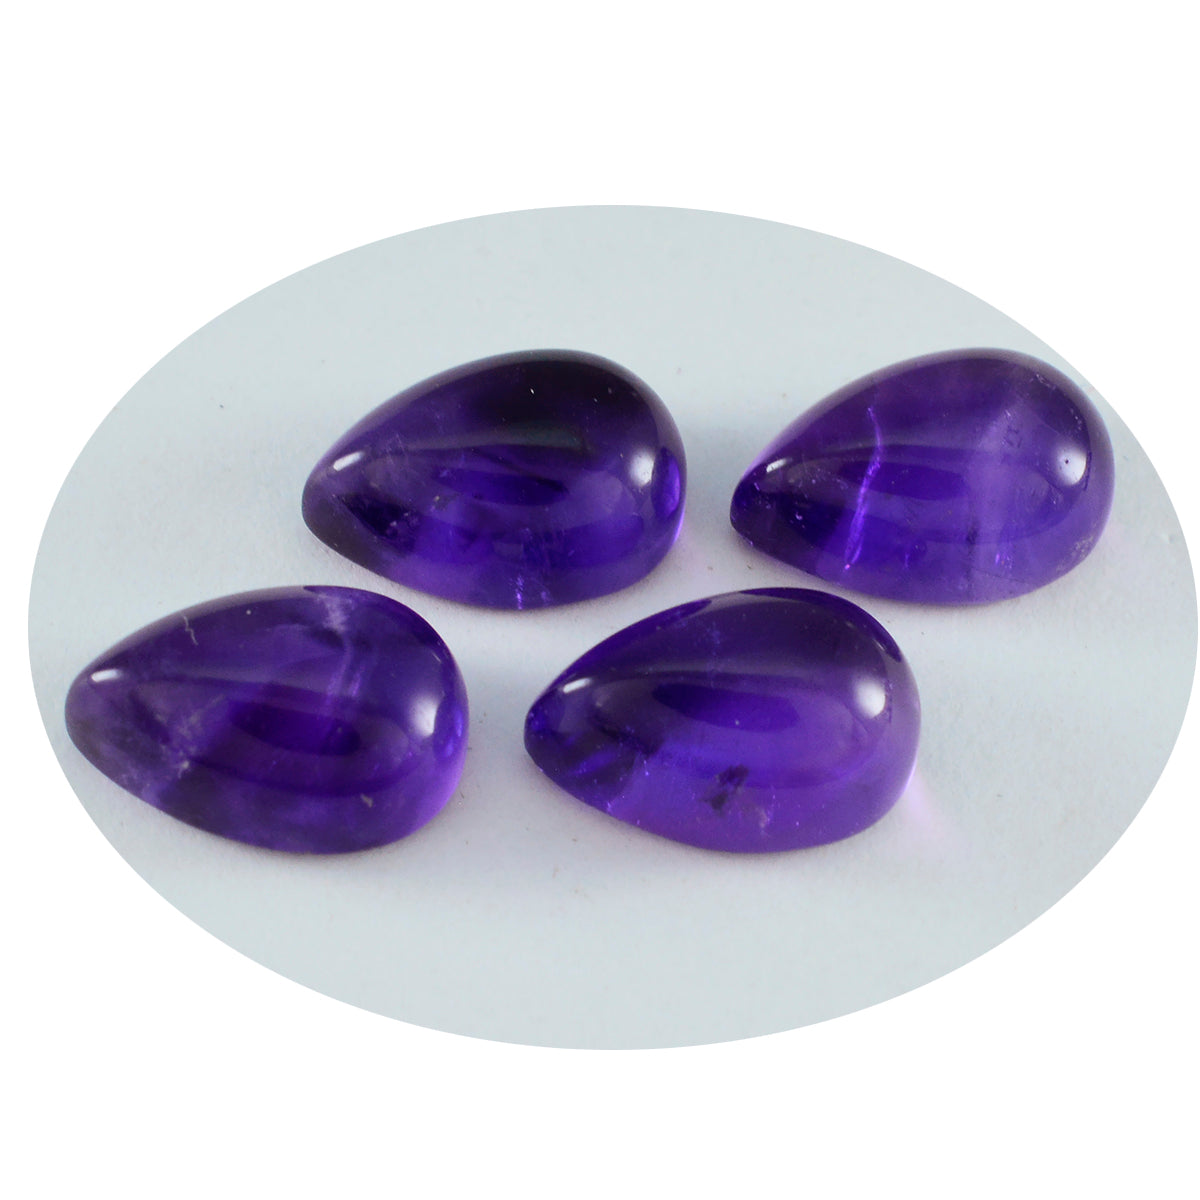 Riyogems 1PC Purple Amethyst Cabochon 7x10 mm Pear Shape great Quality Loose Gemstone